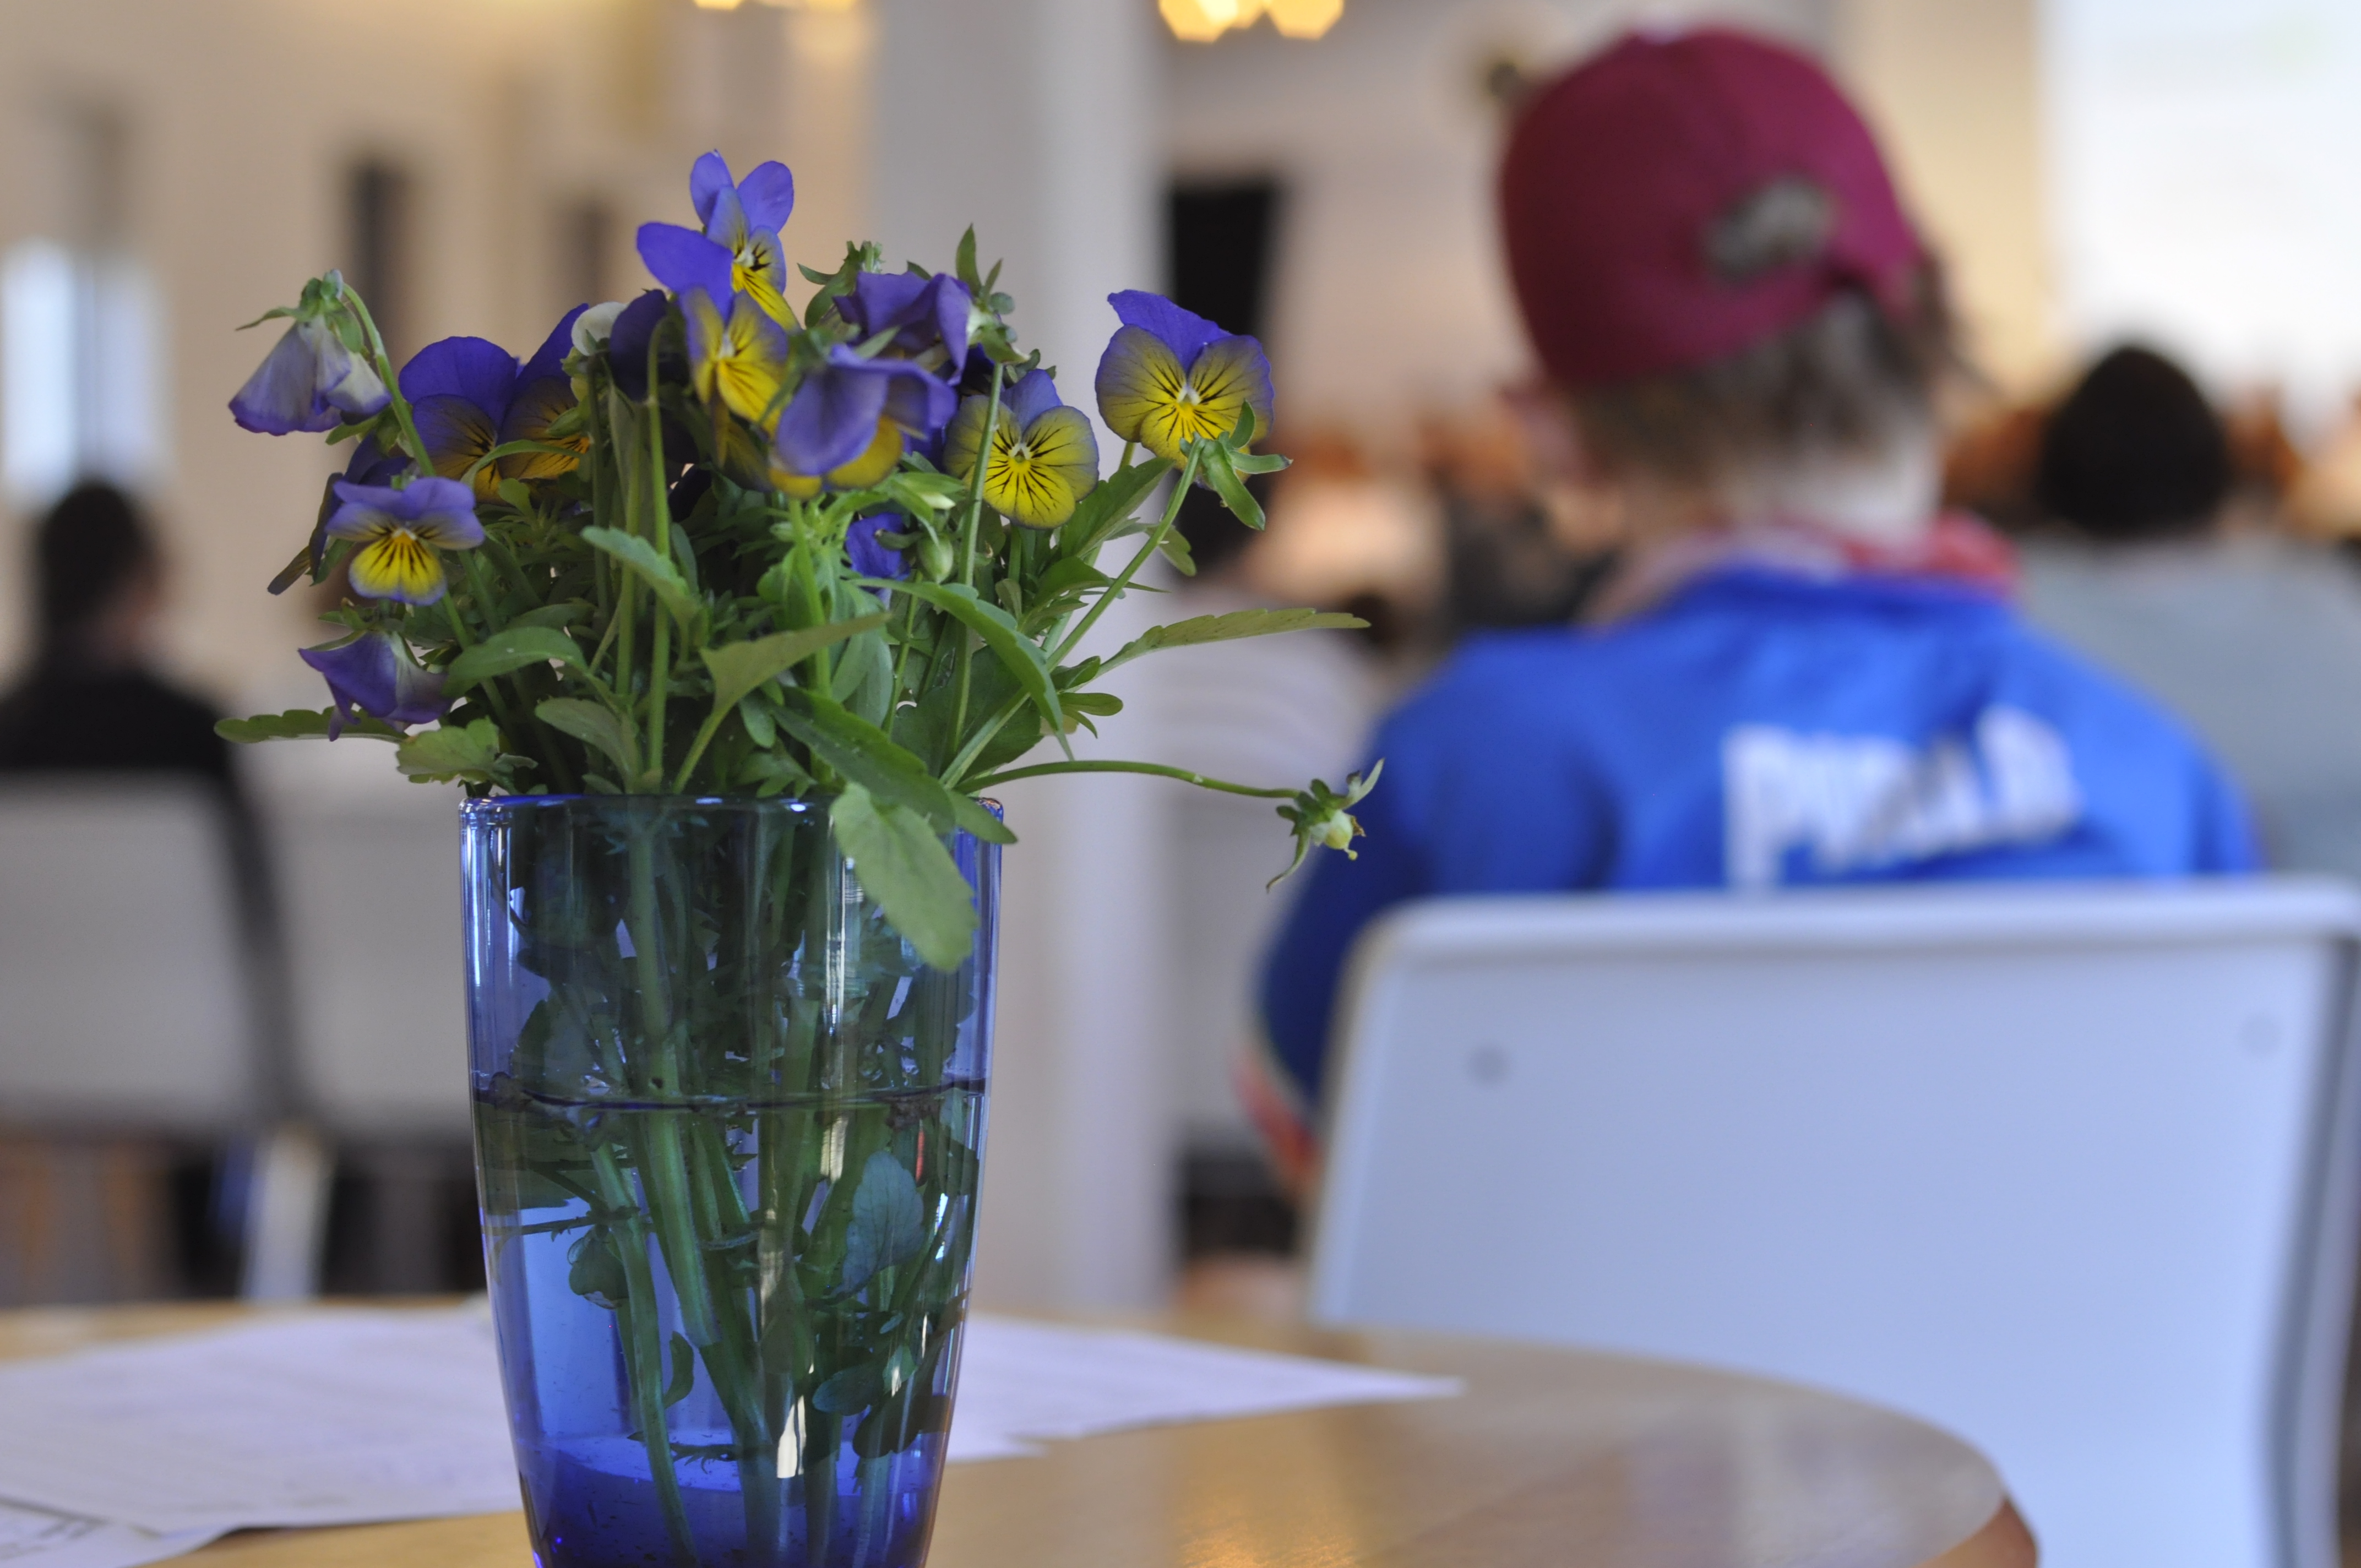 En bukett med lila och gula blommor i en vas och i bakgrunden en personer med blå tröja